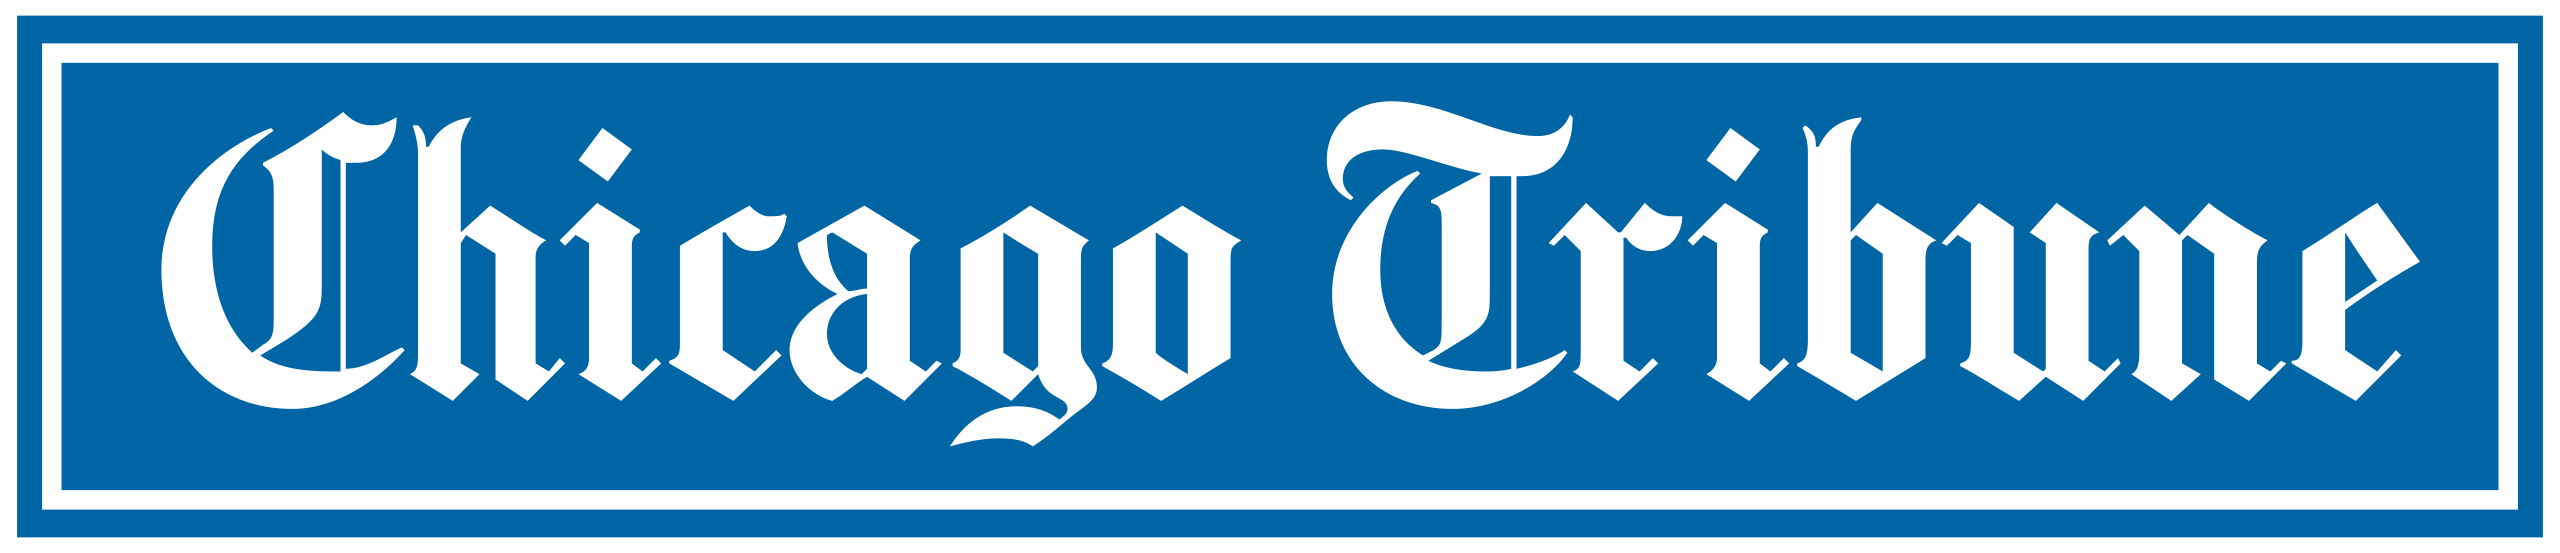 px Chicago Tribune logo svg